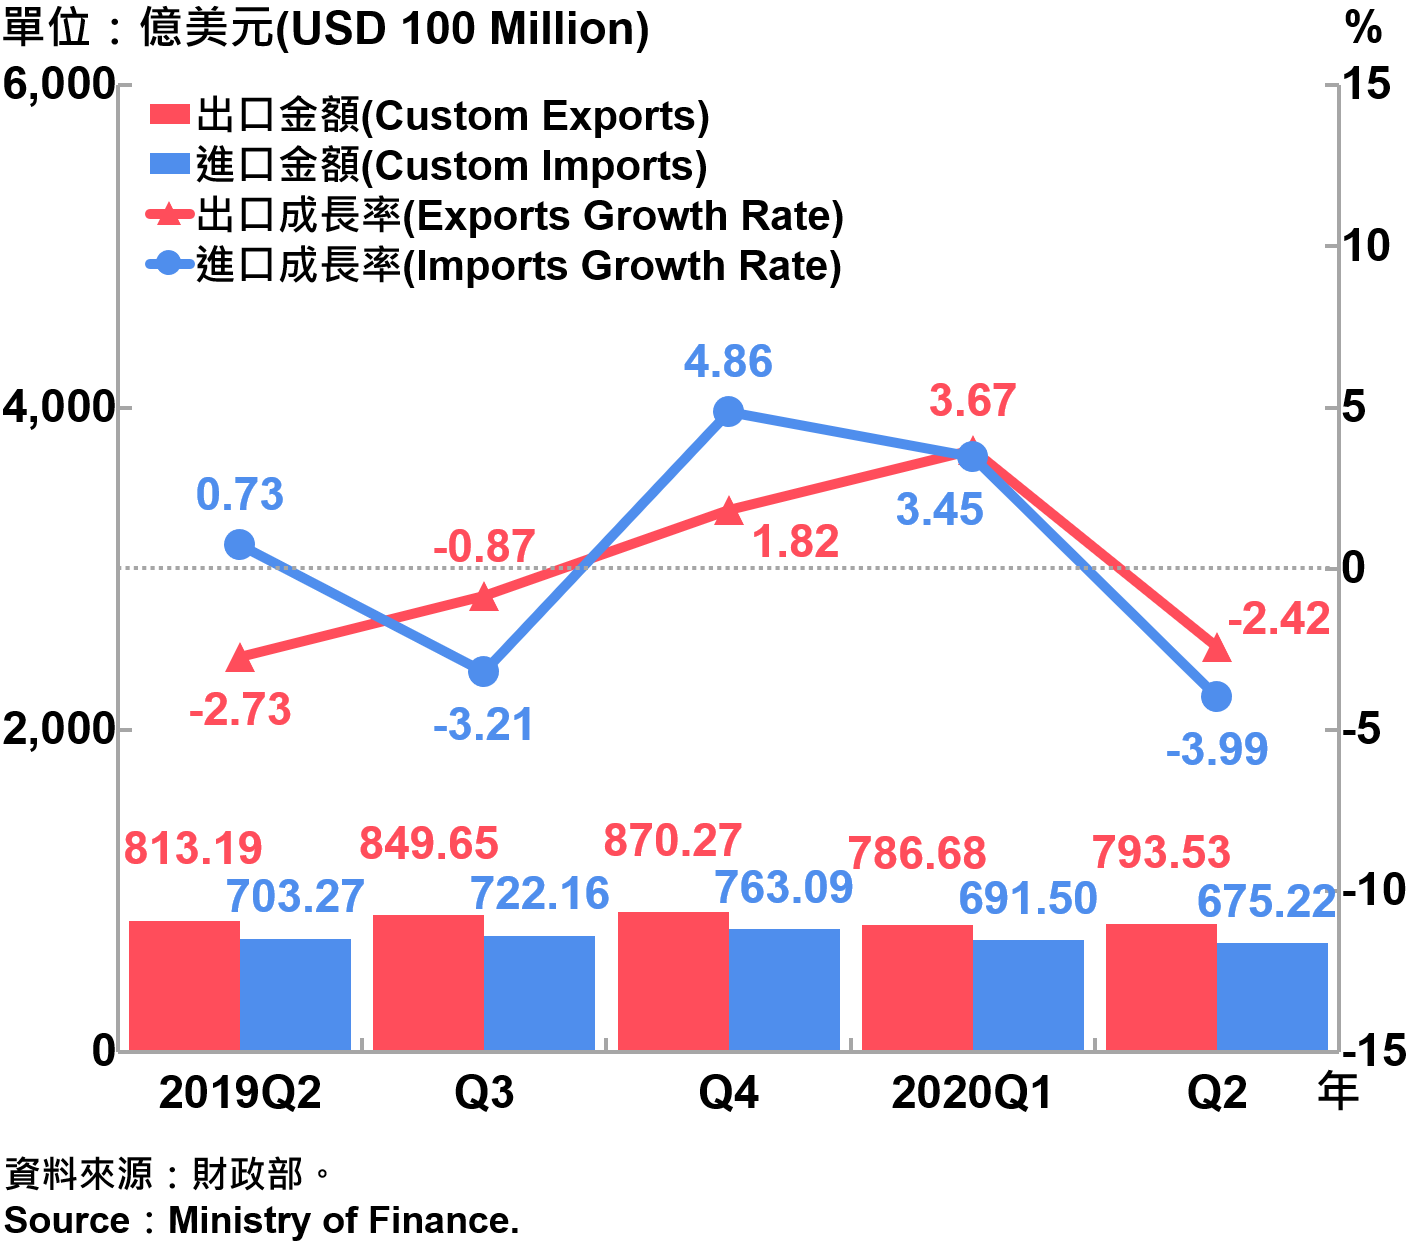 臺灣海關進出口金額與成長率Custom Exports, Custom Imports and Growth Rate in Taiwan